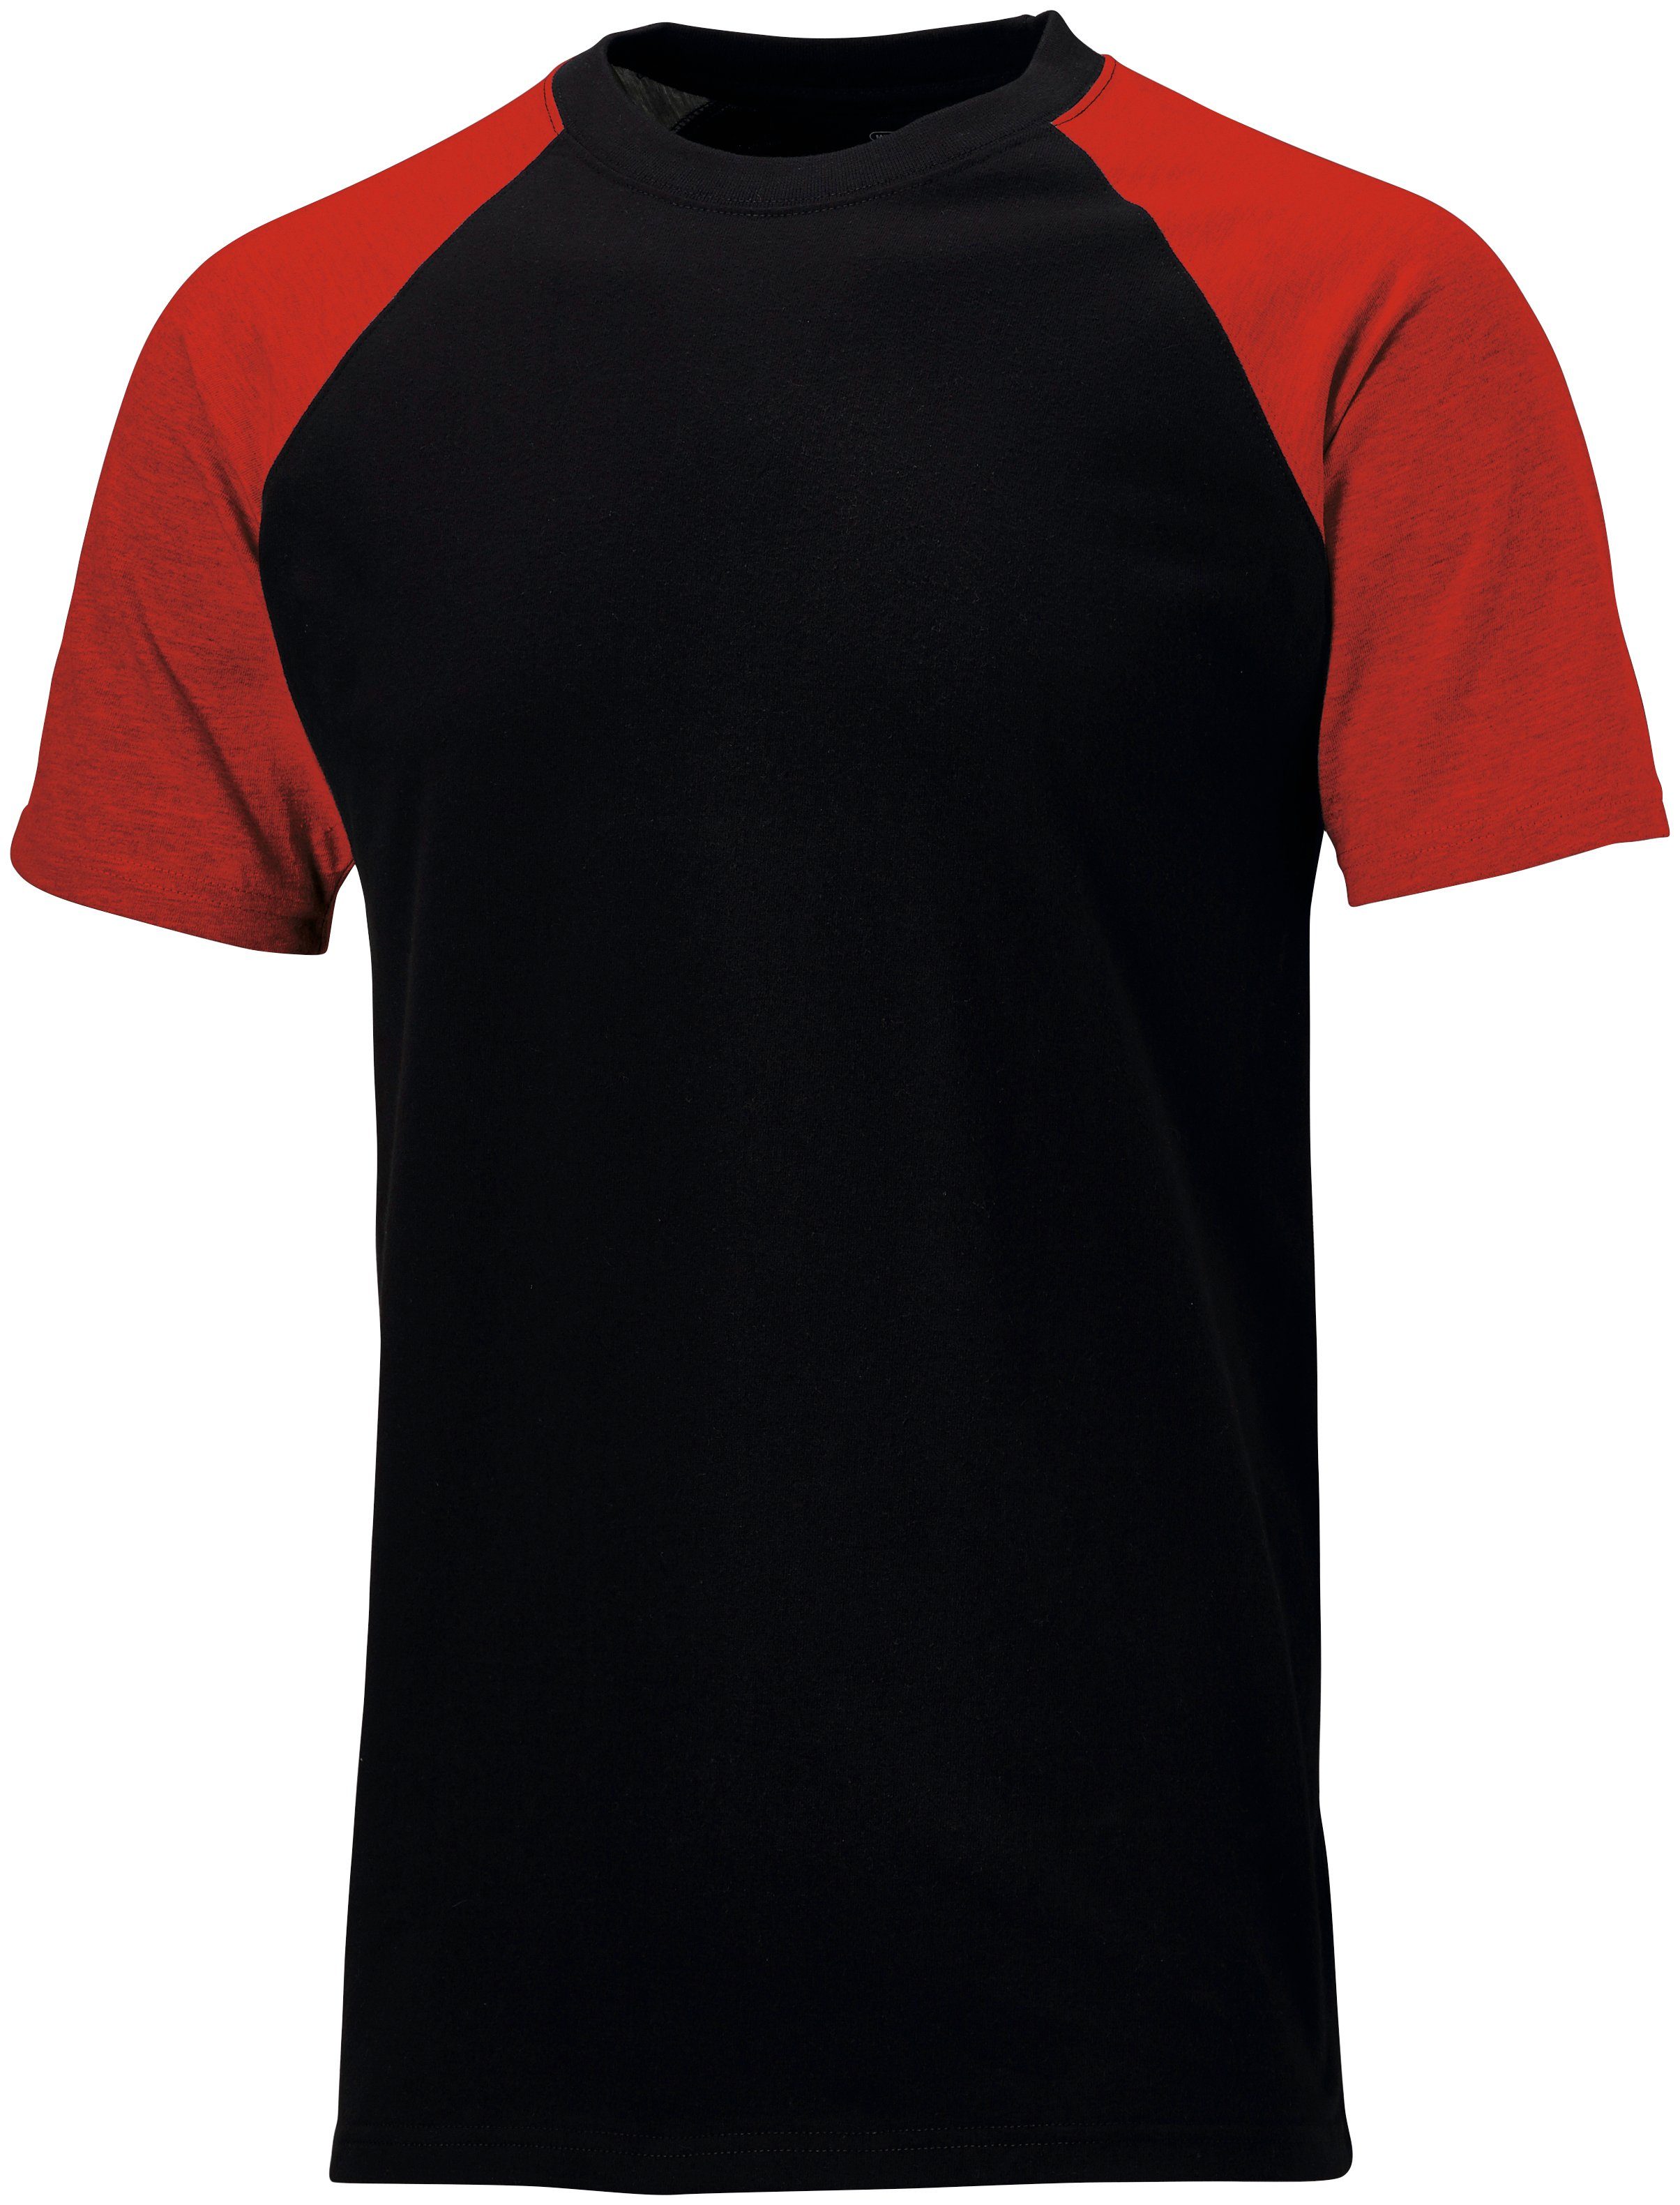 Dickies T-Shirt Gr. S - 3XL schwarz-rot